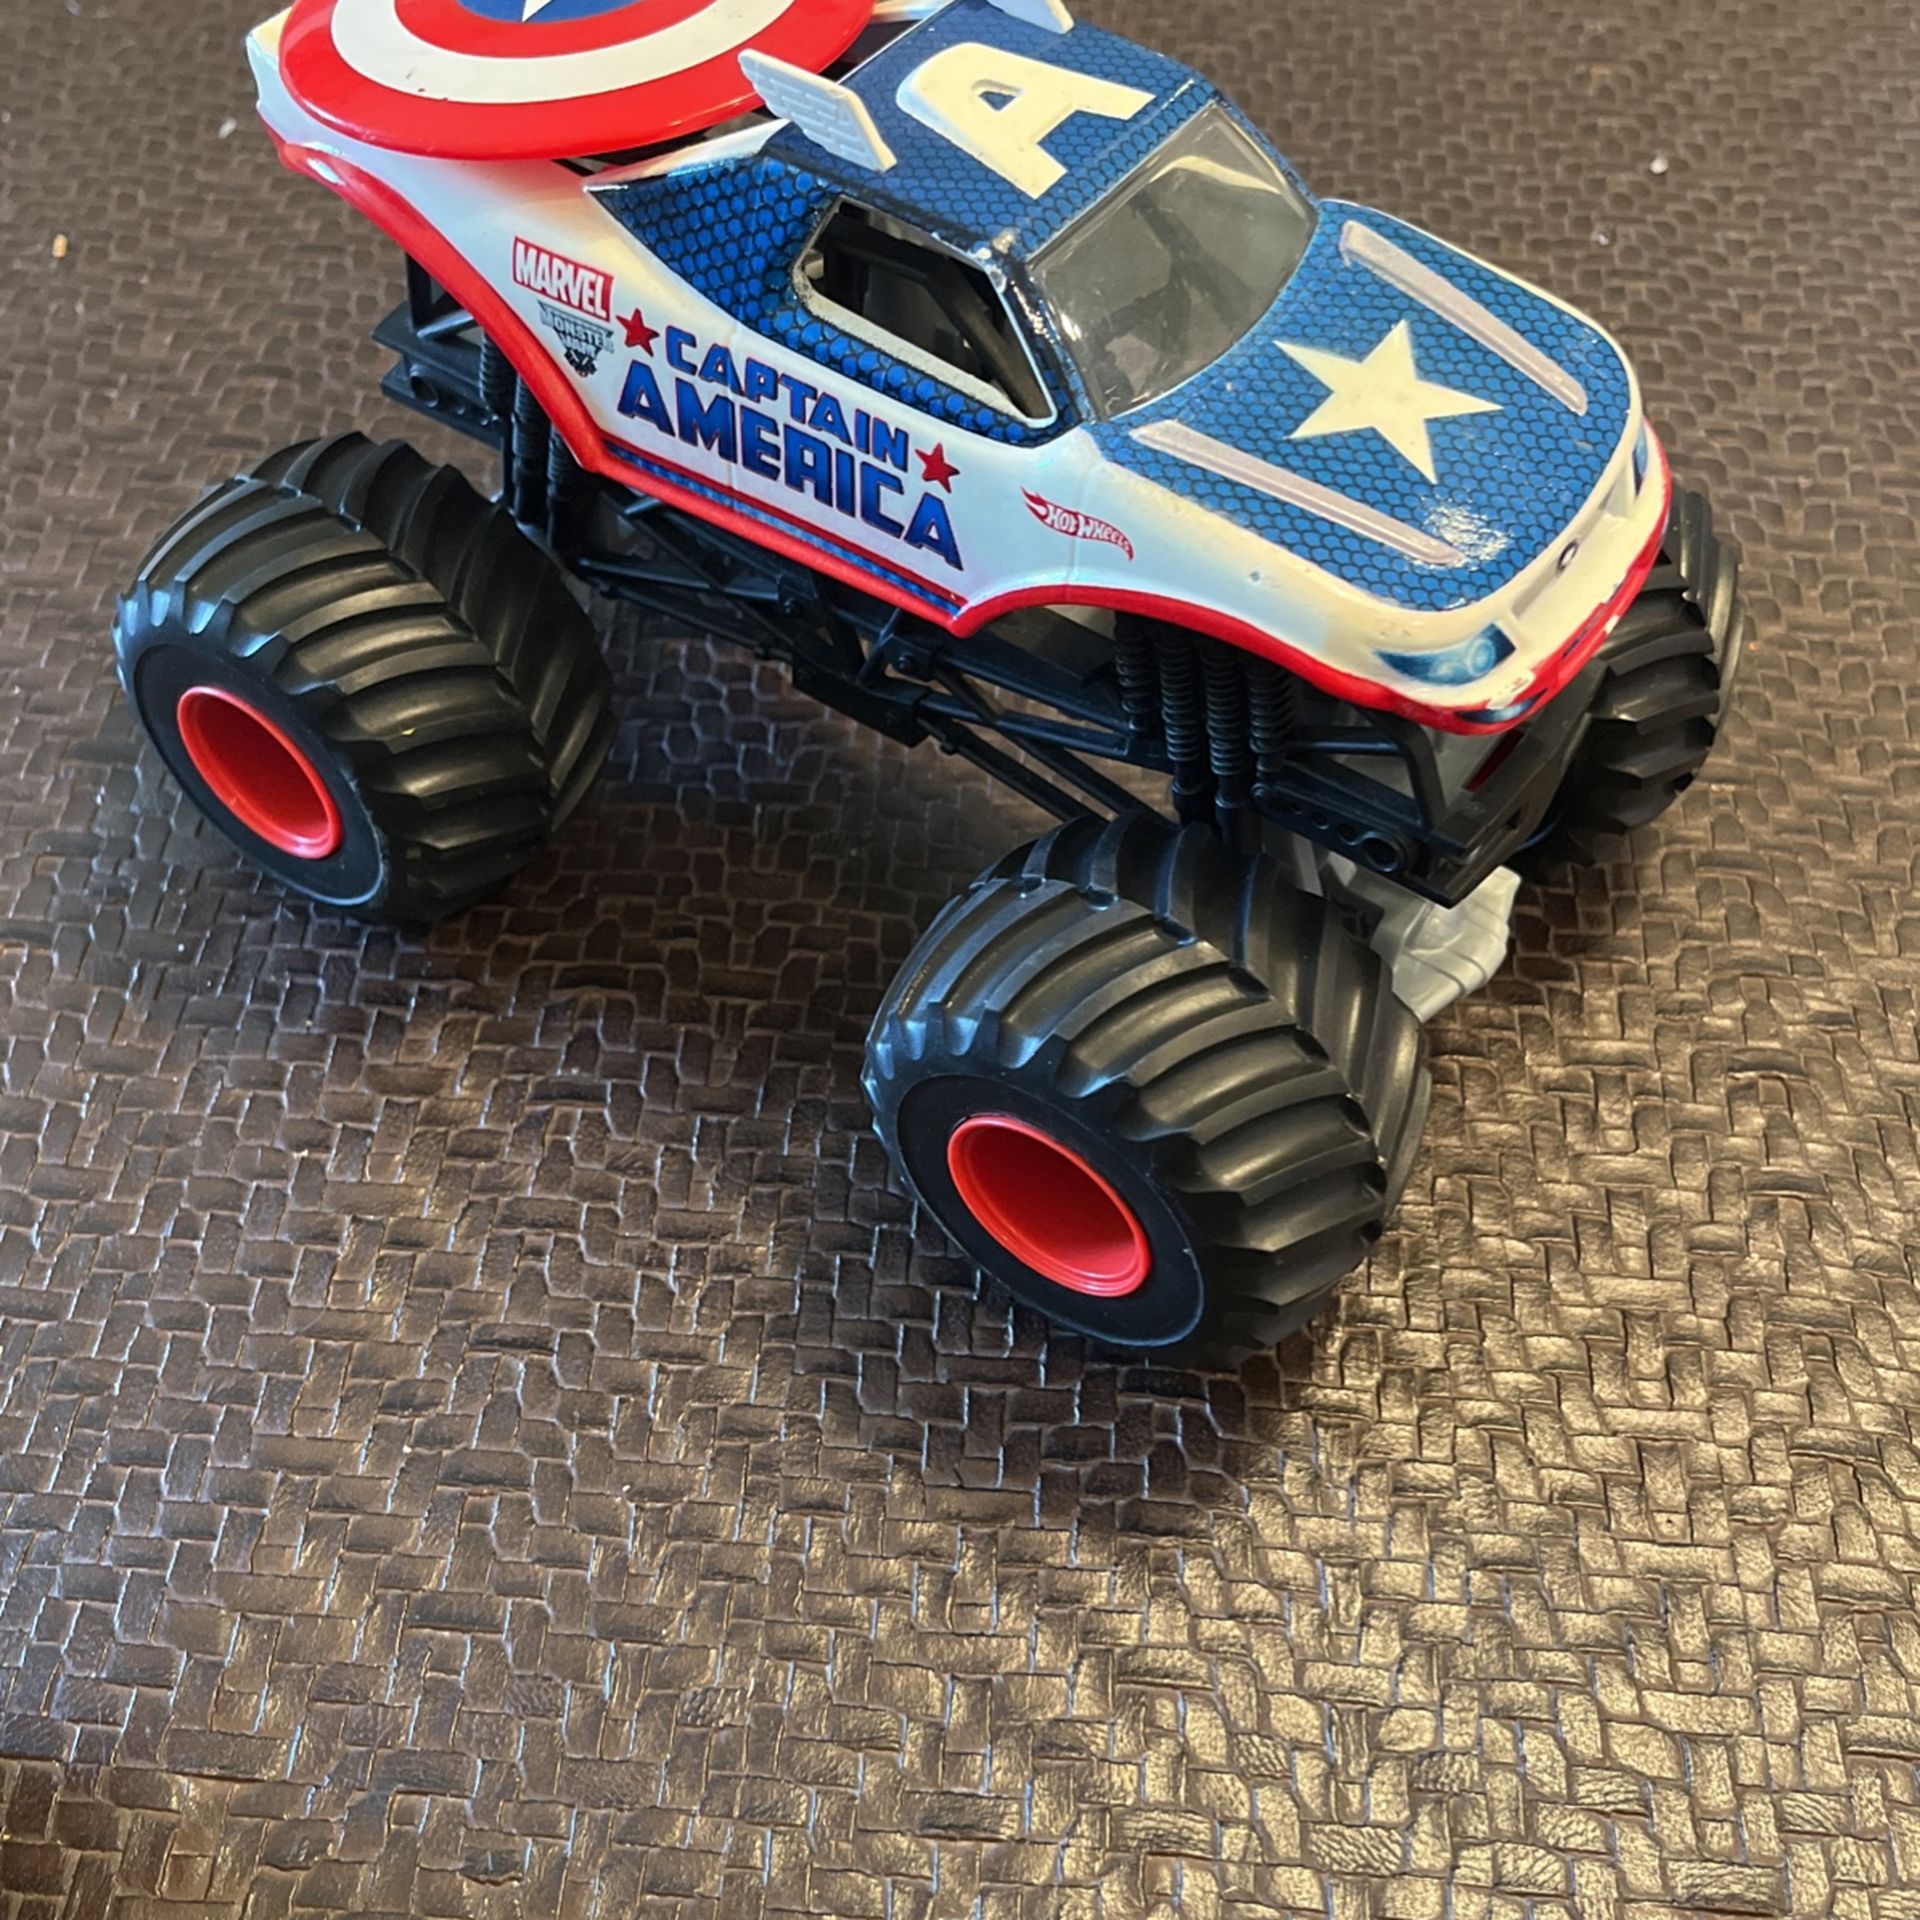 Captain America Monster Truck